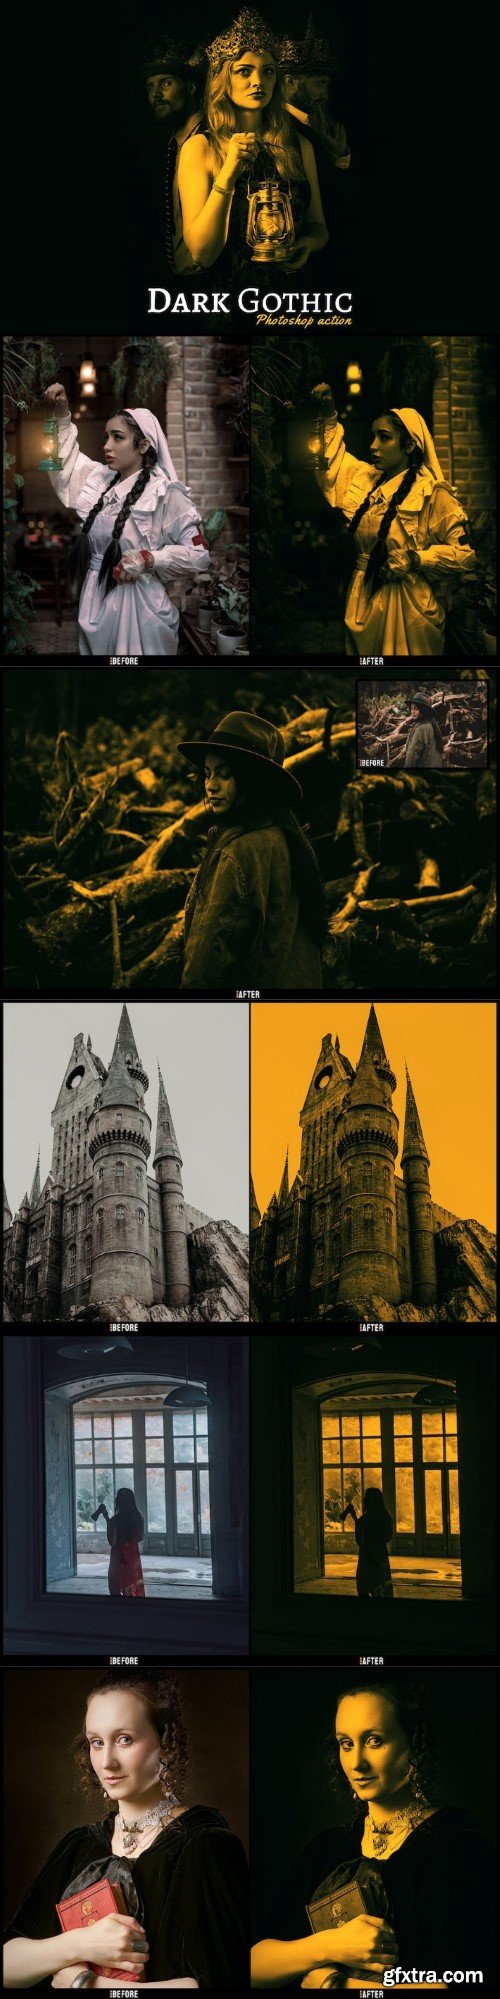 Dark Gothic - Photoshop Action